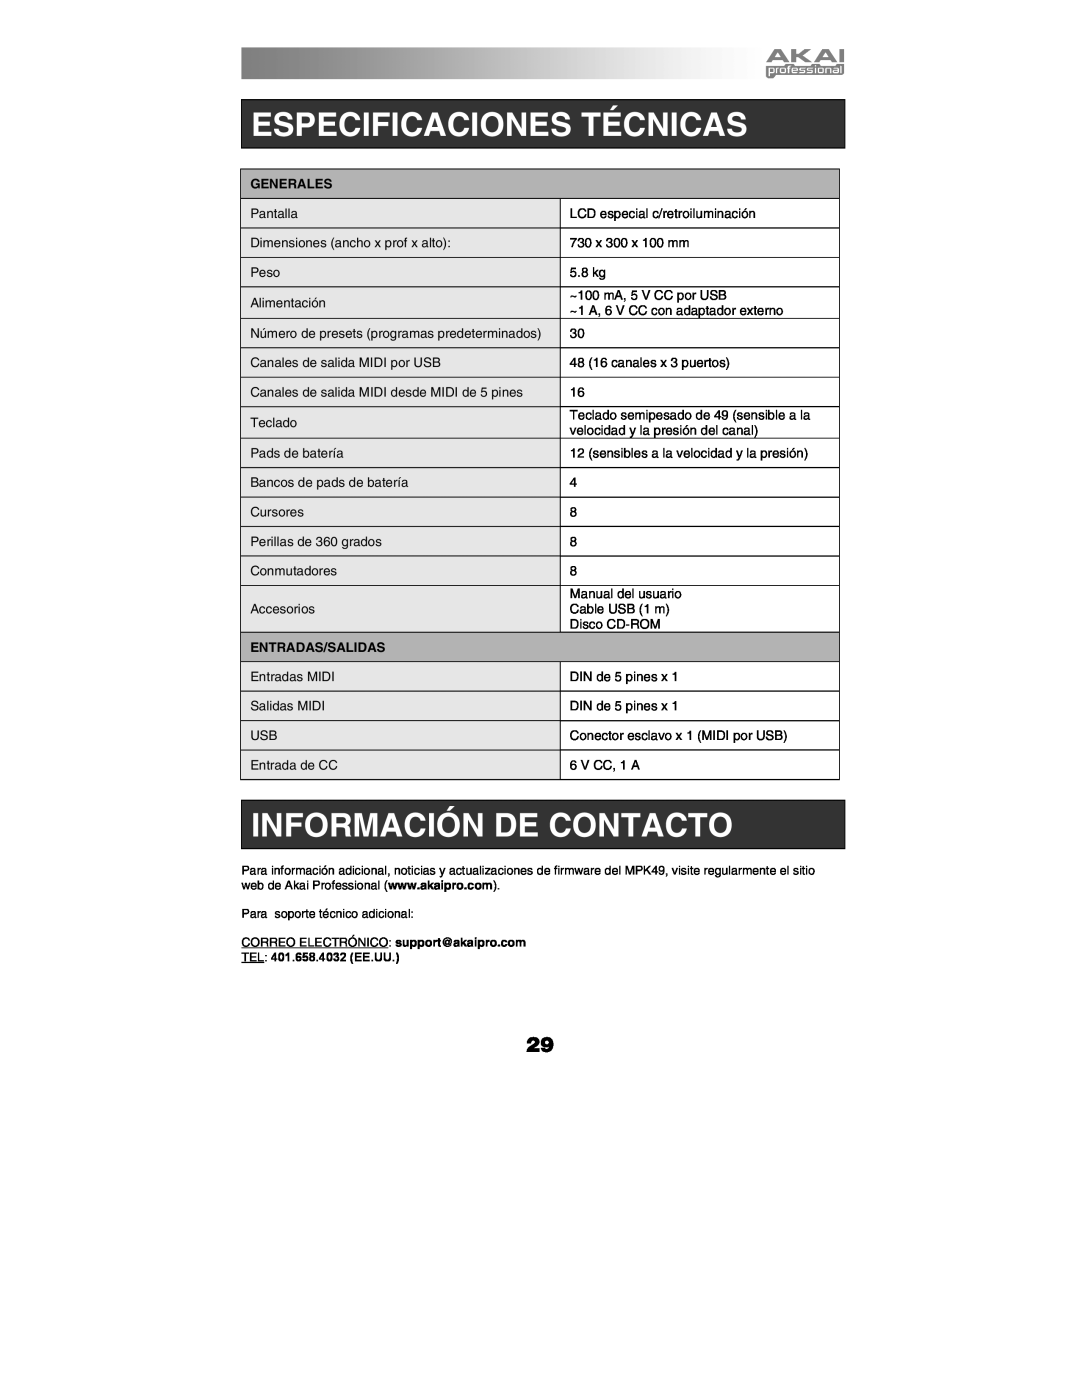 Akai MPK49 quick start manual Especificaciones Técnicas, Información De Contacto, Generales, Entradas/Salidas 